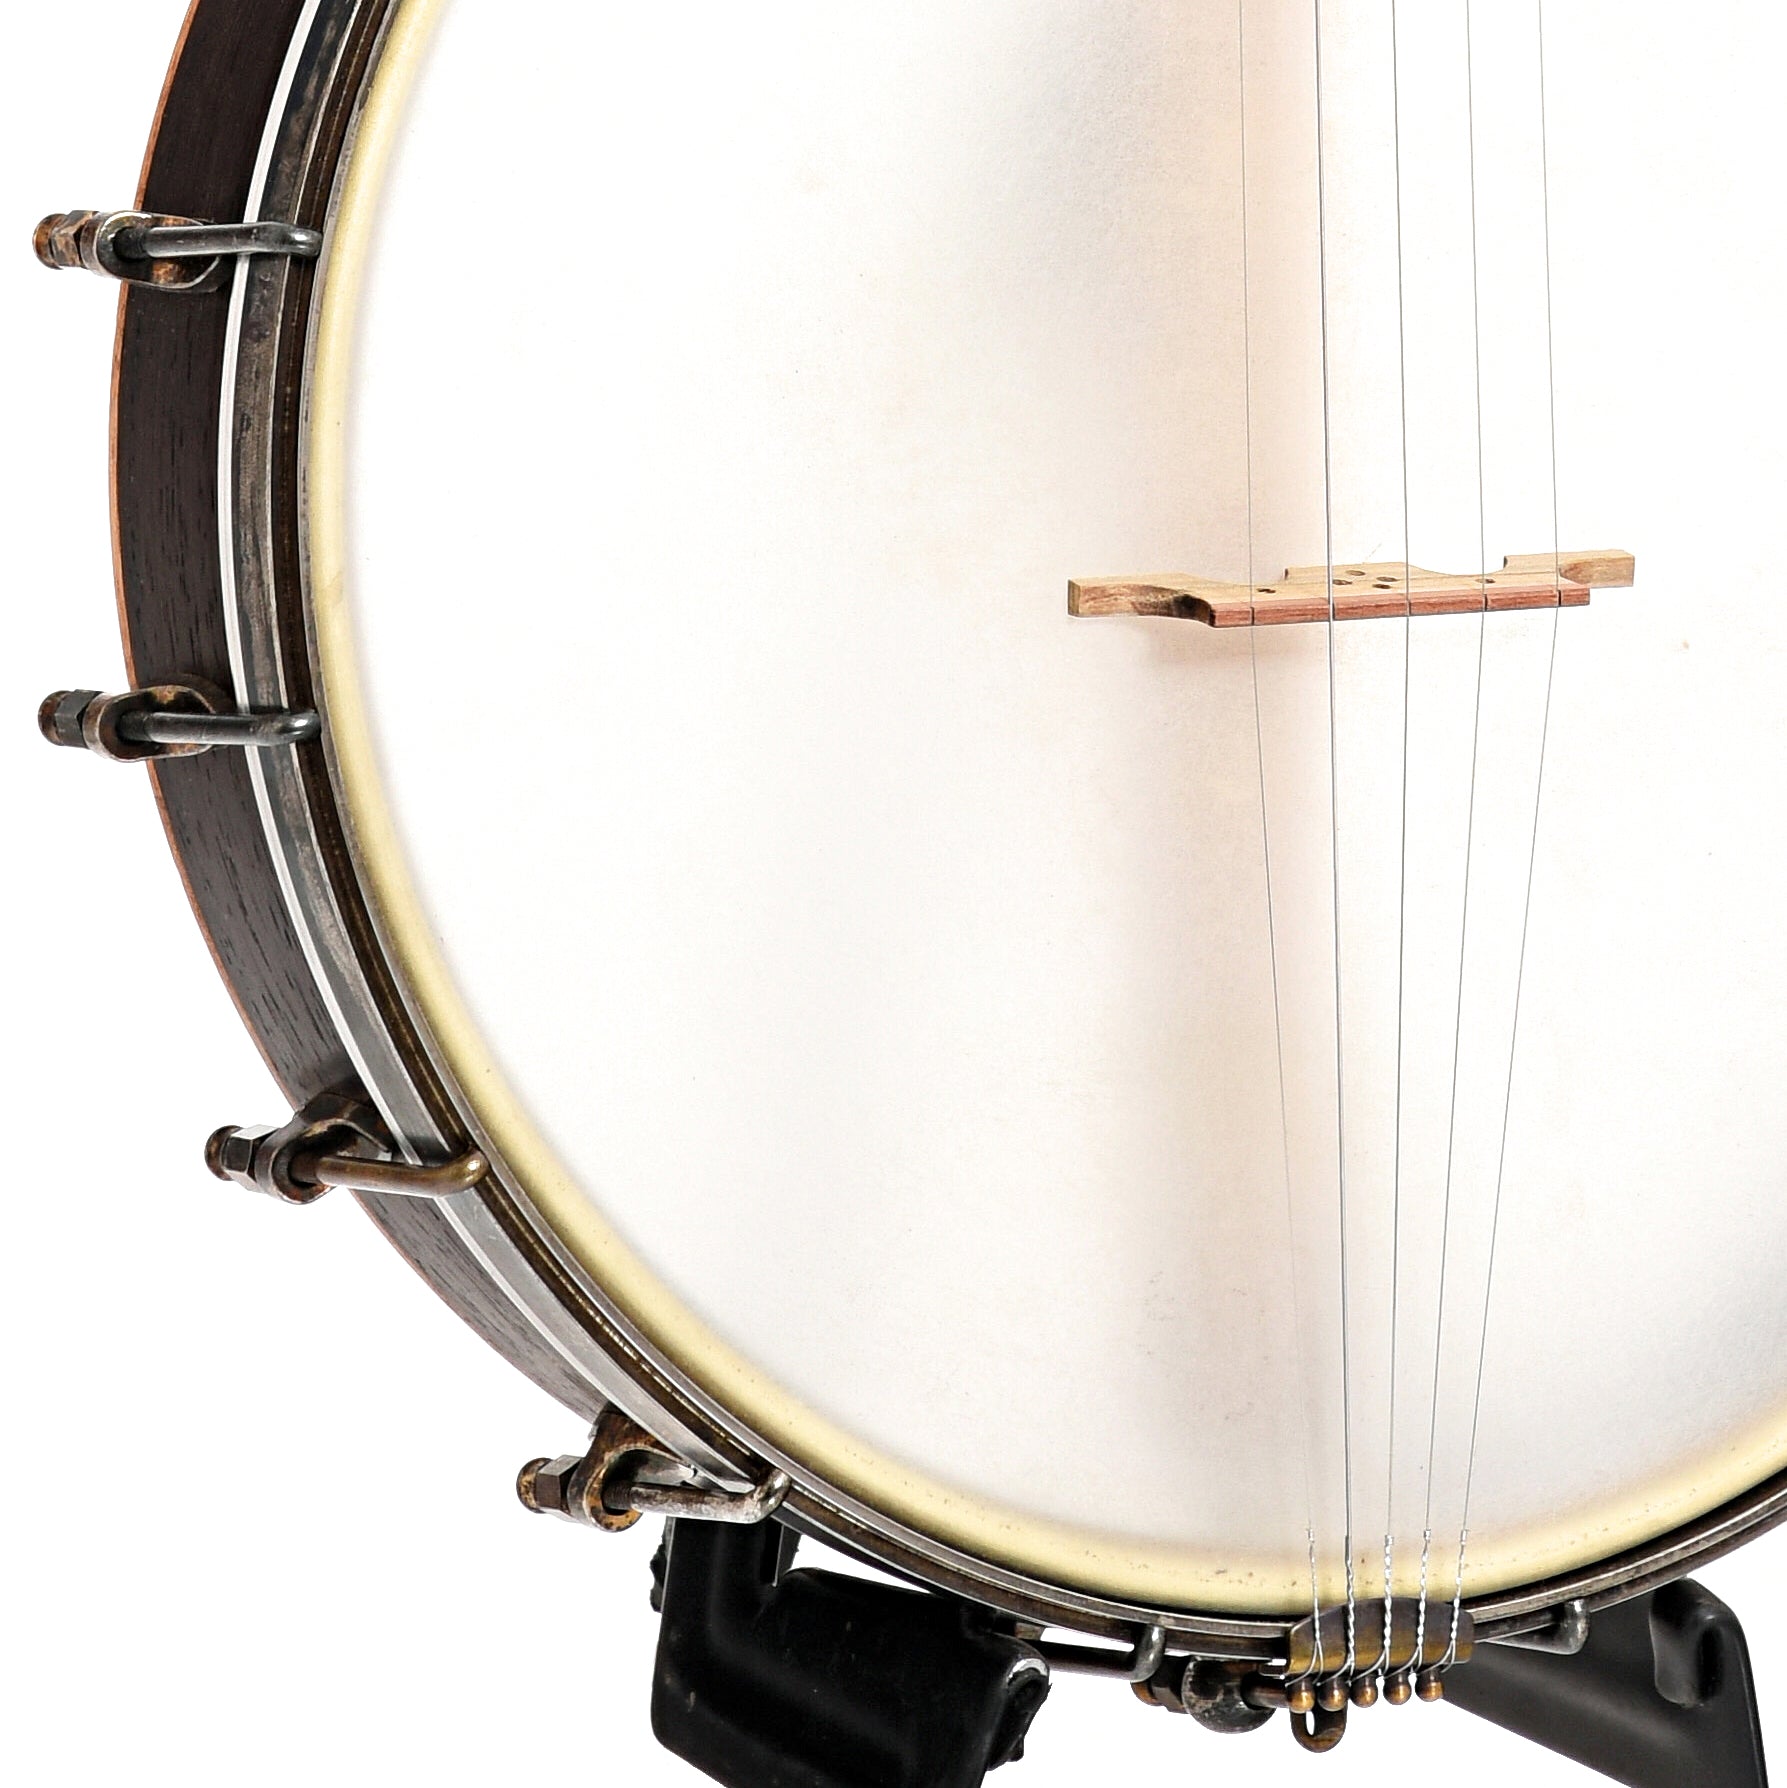 Image 4 of Dogwood Banjo Co. 12" Openback Banjo, No. 189, with Gigbag - SKU# DW189 : Product Type Open Back Banjos : Elderly Instruments